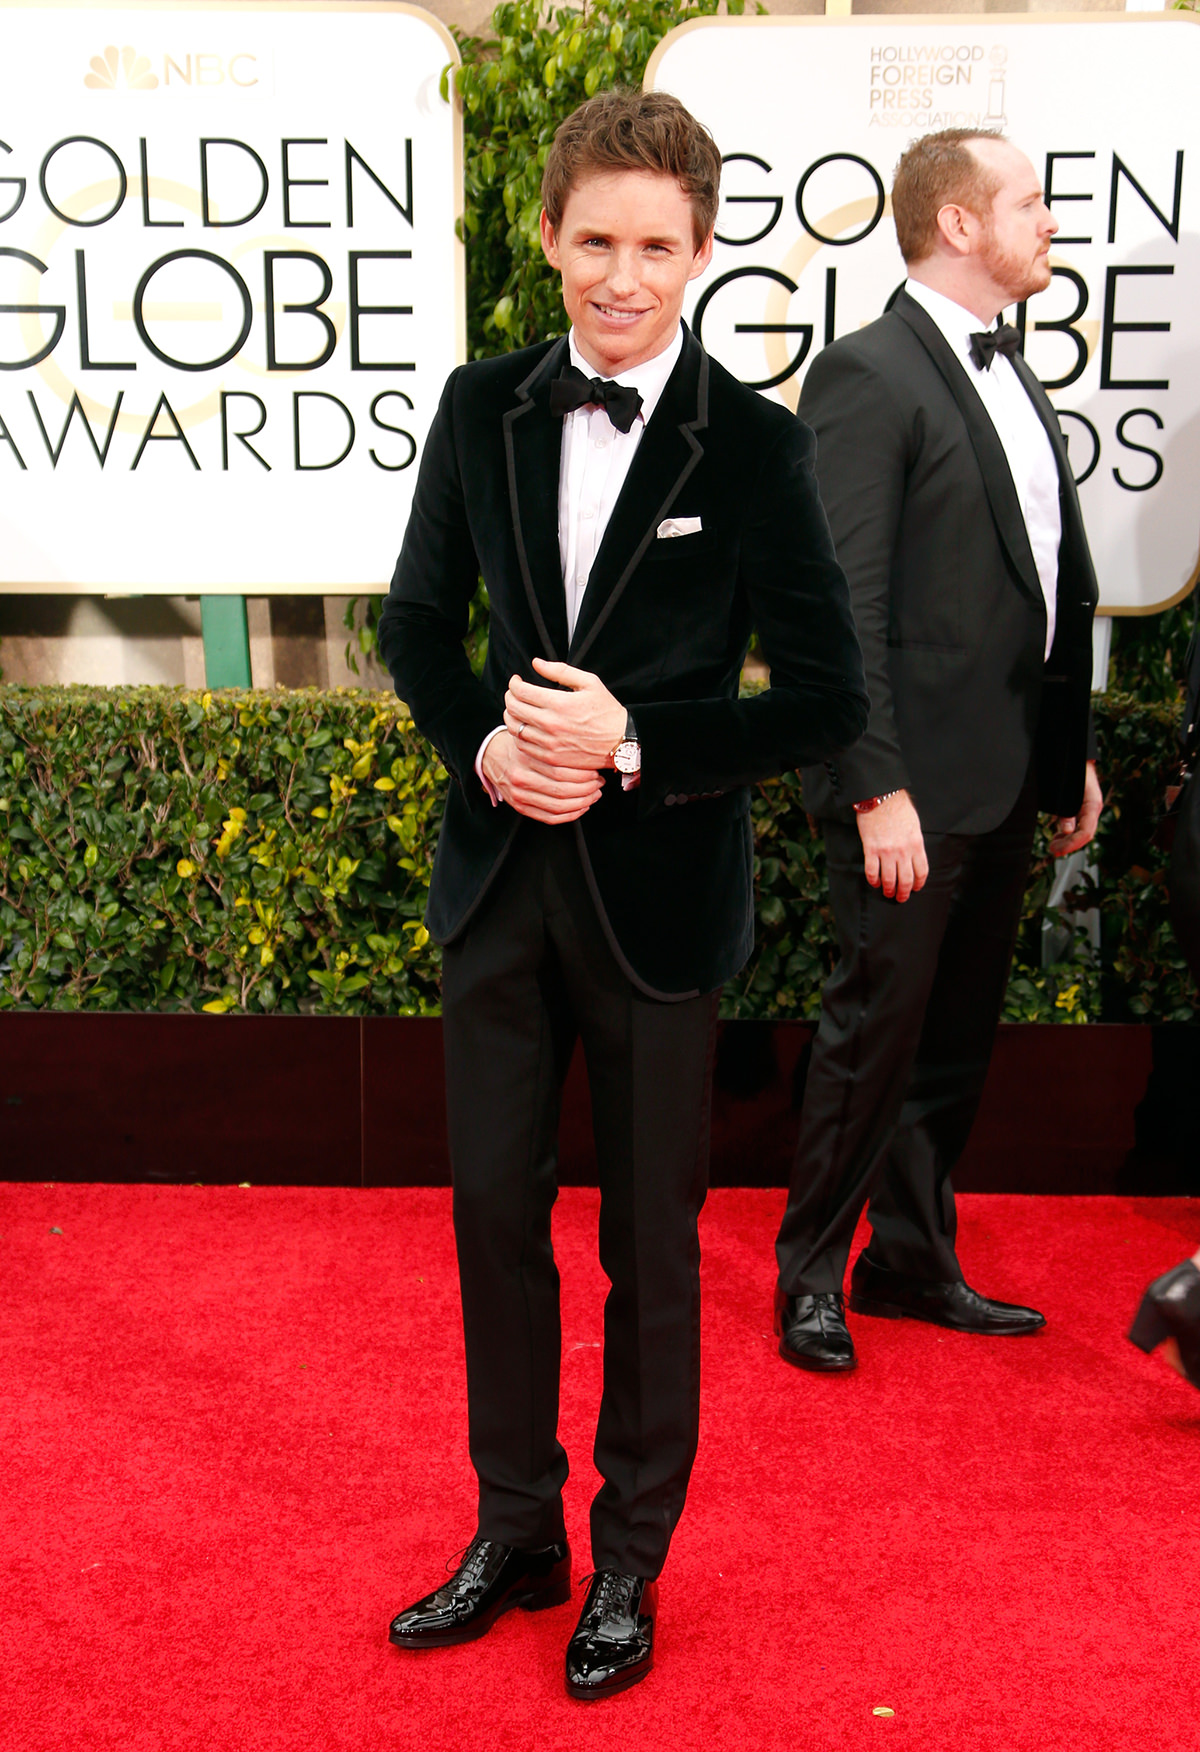 Golden Globe Awards Red Carpet 2015